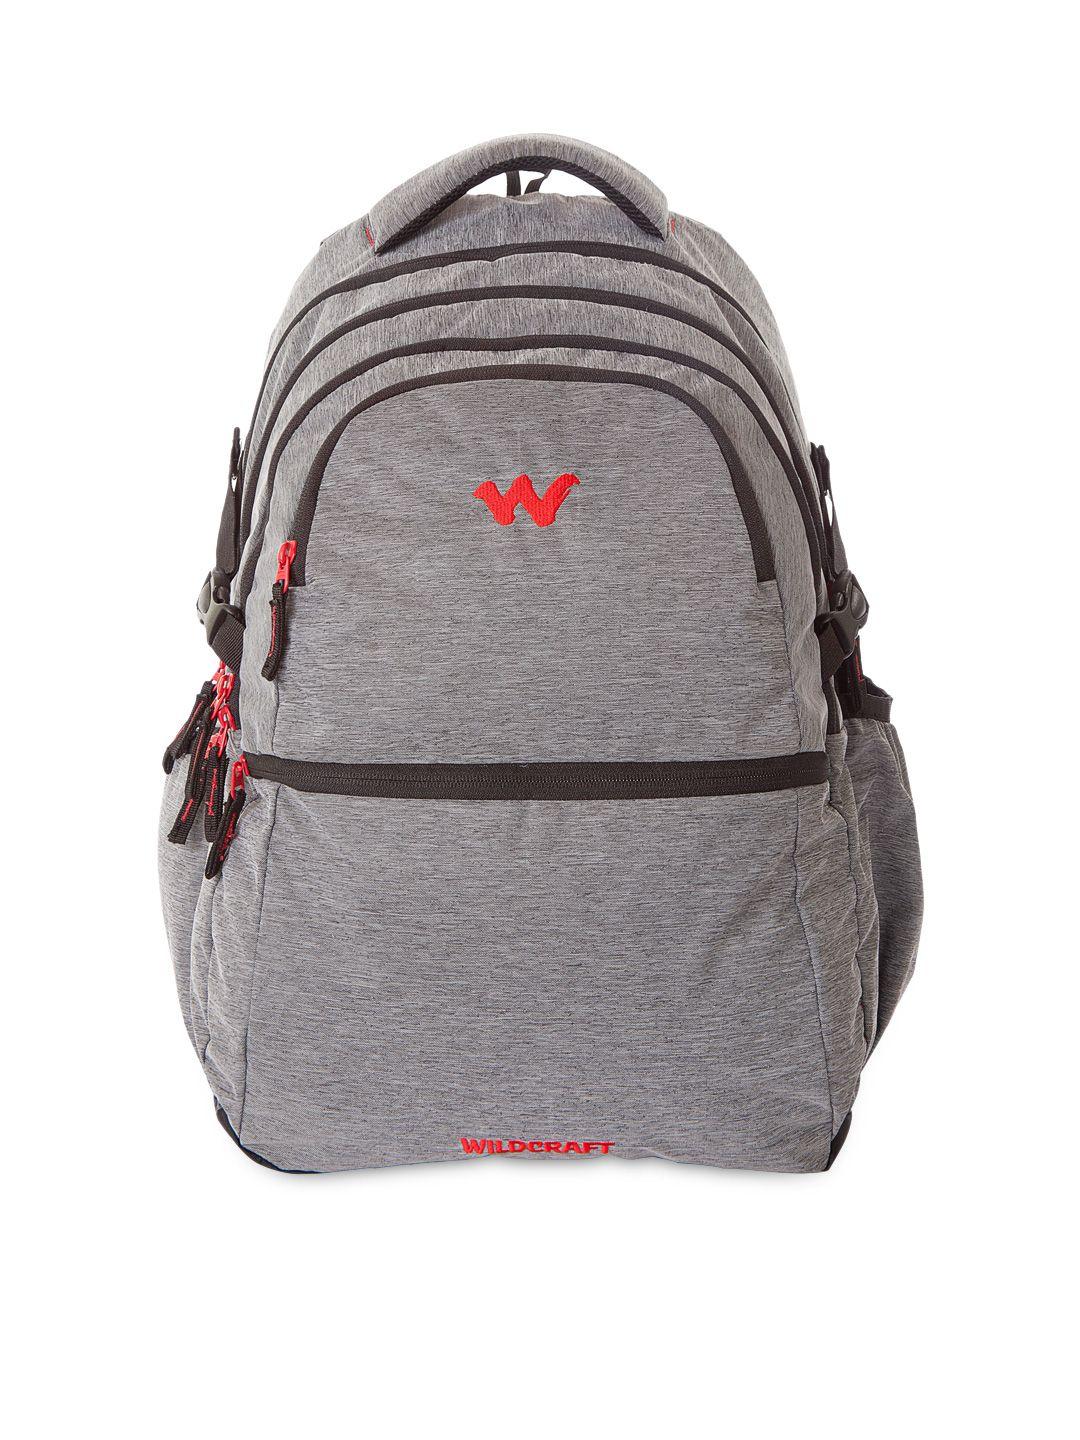 wildcraft unisex grey laptop backpack